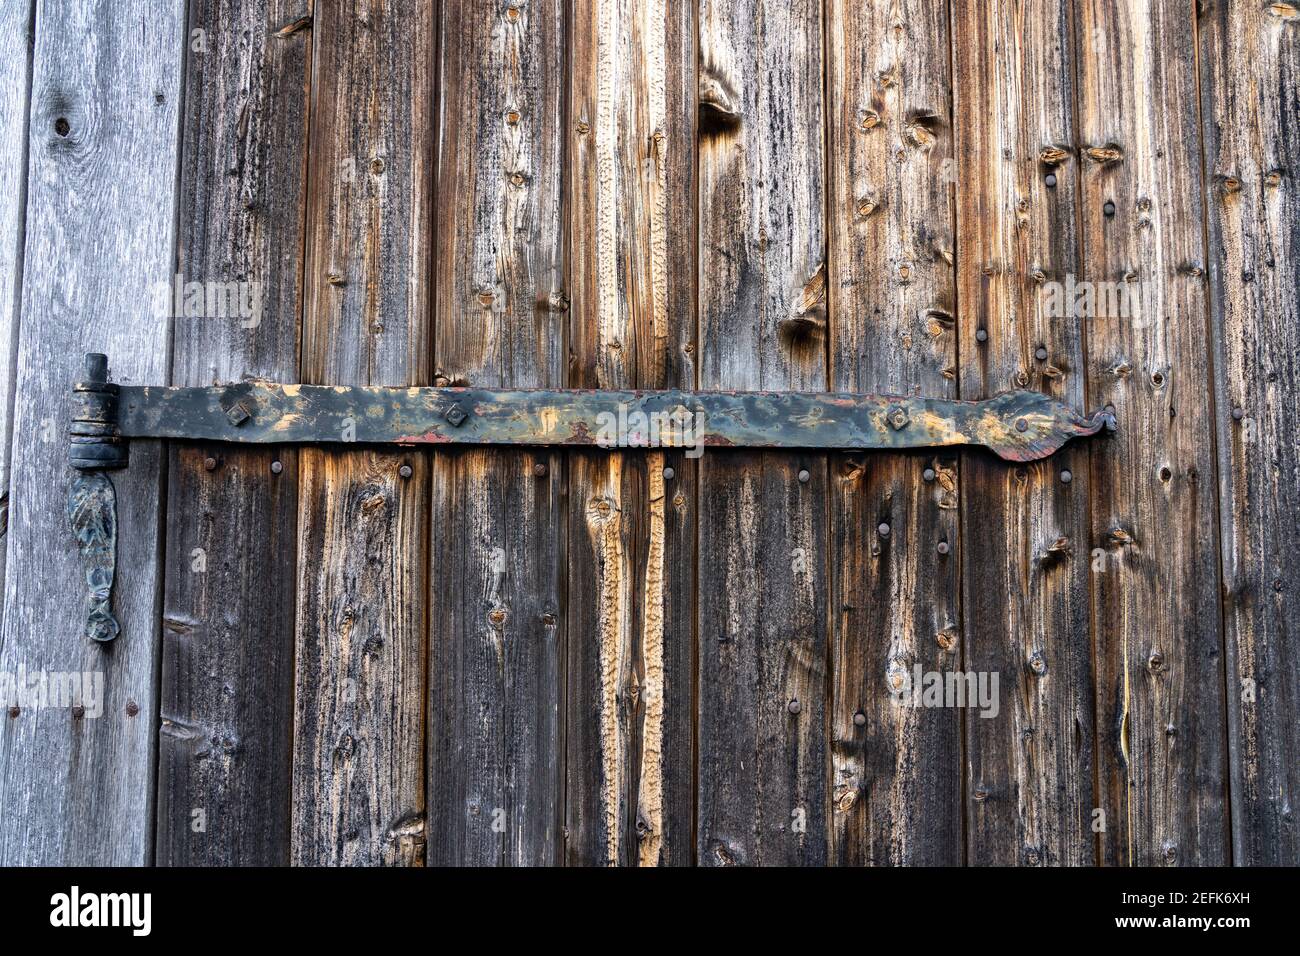 Porte en bois d'une écurie caractéristique pour les mouflons allemands dans la réserve naturelle de Lueneburger Heide, allemagne Banque D'Images